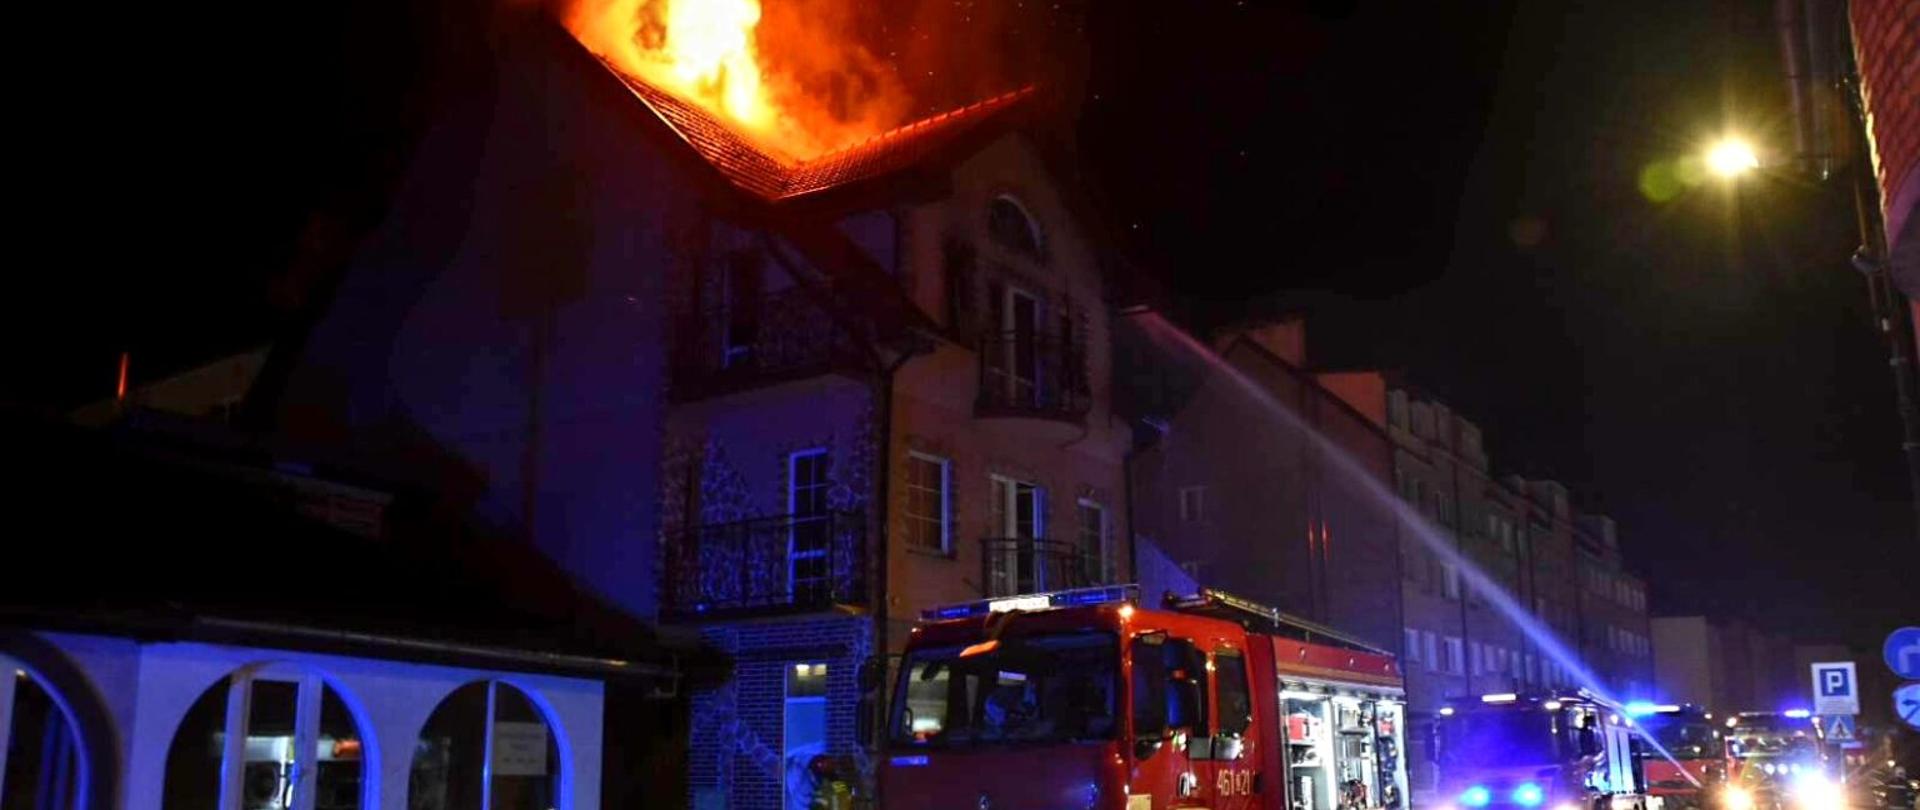 Zdjęcie przedstawia pożar budynku mieszkalnego w porze nocnej oraz wozy strażackie które biorą udział w akcji.